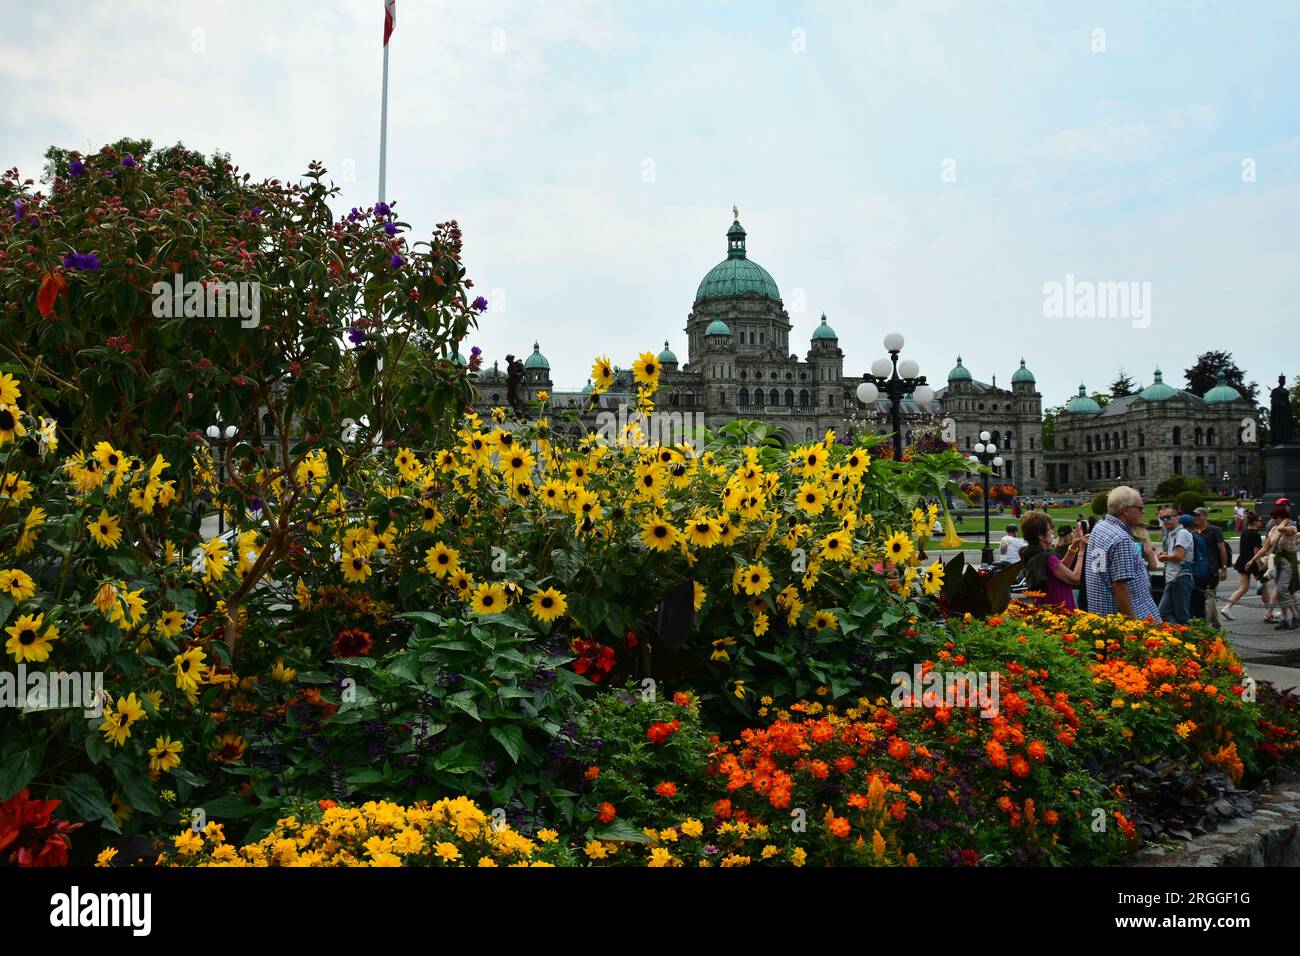 Die parlamentsgebäude in Victoria, BC, Leute auf Urlaub in Victoria. Stockfoto